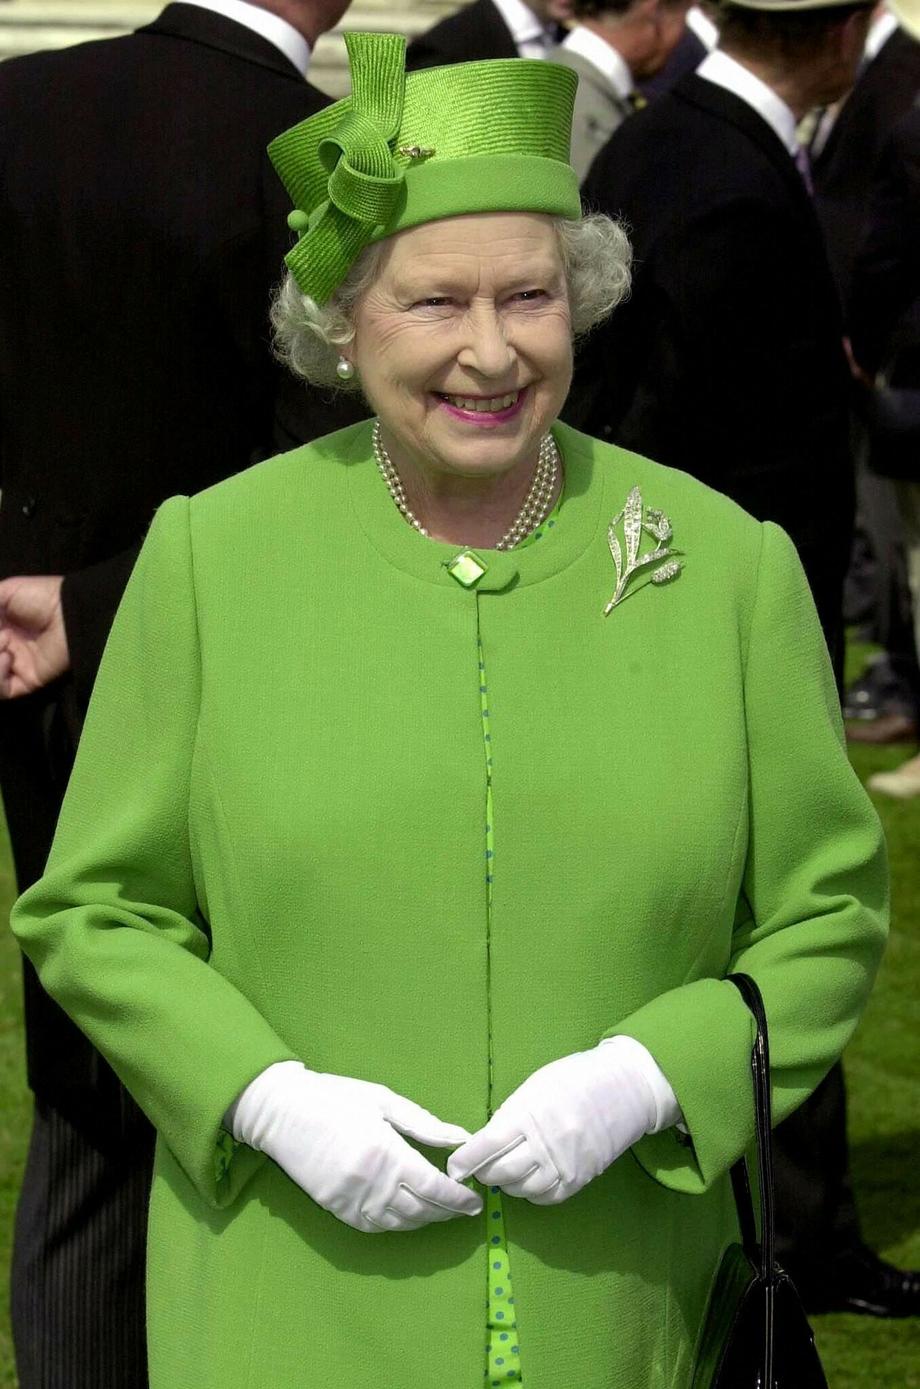 Królowa wybiera jaskrawe kolory strojów, bo lubi się wyróżniać